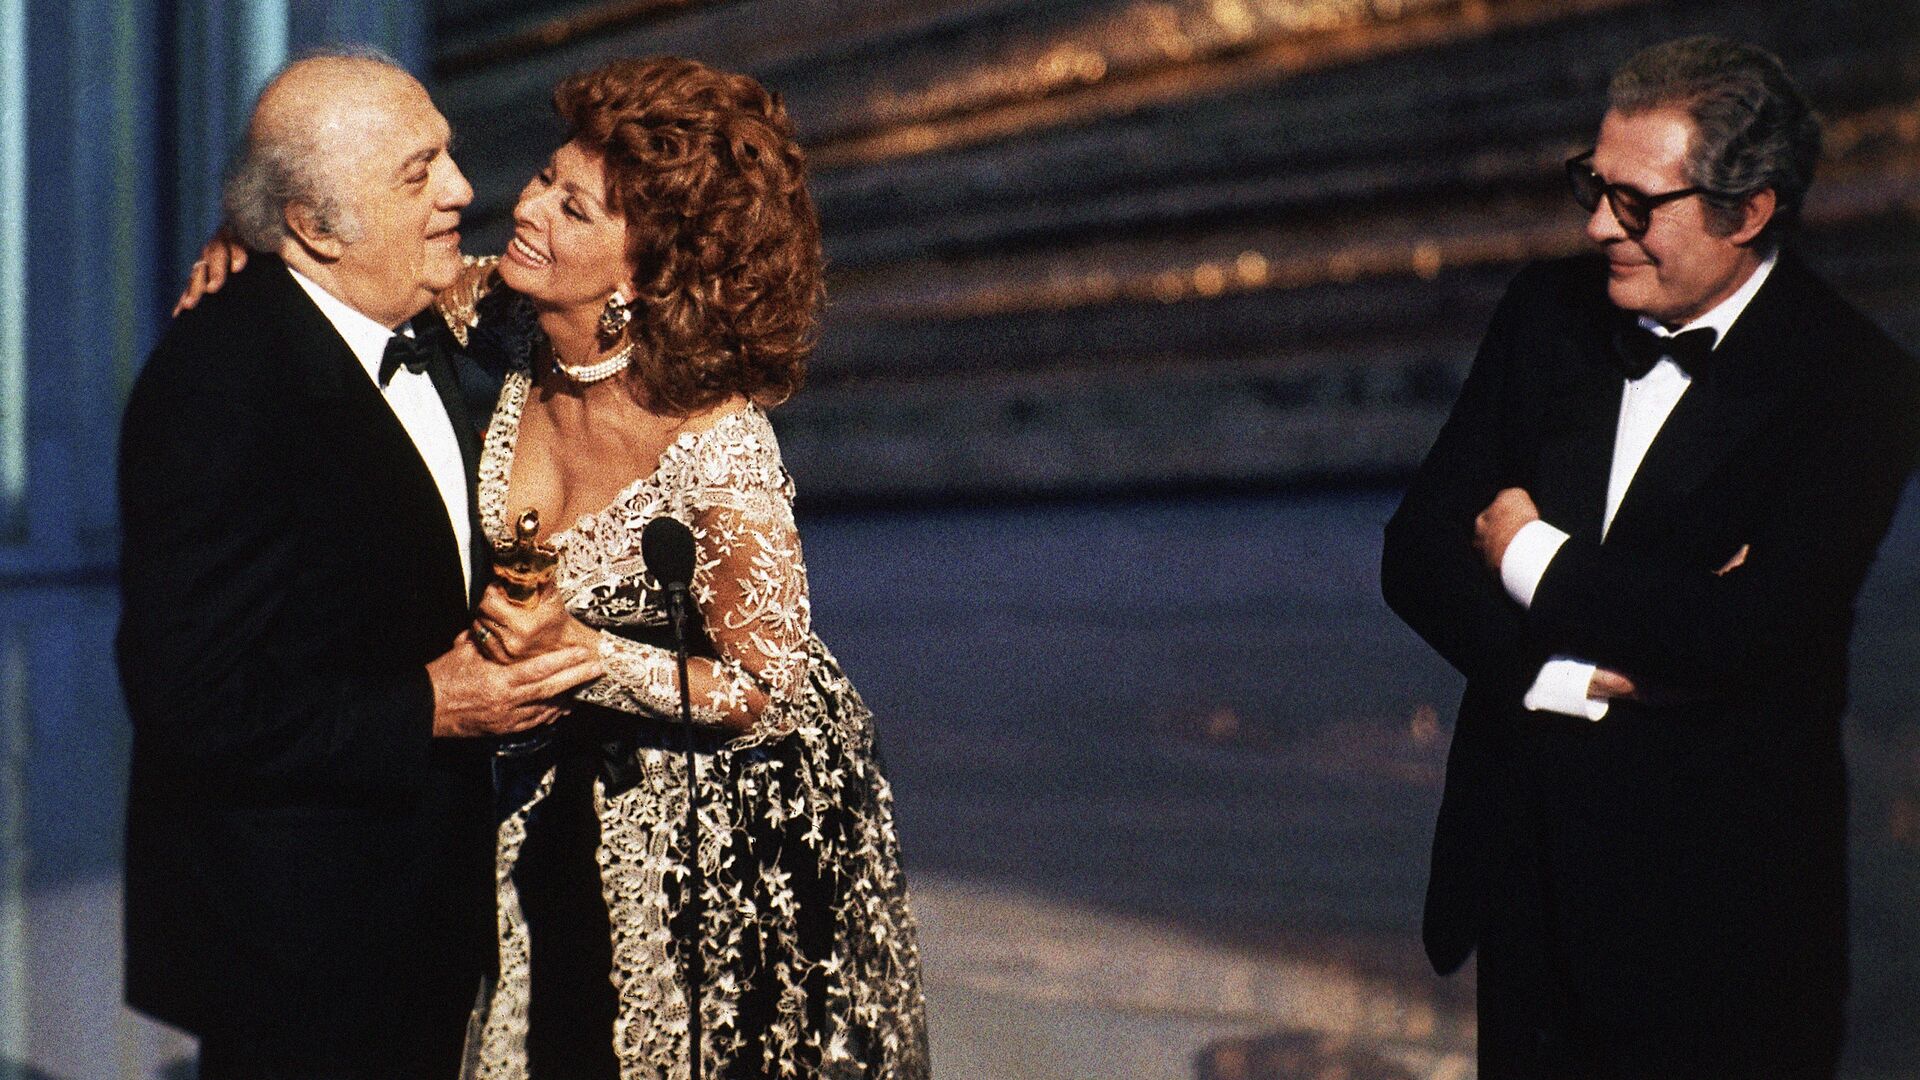 Софи Лорен и Марчелло Мастоянни вручают почетный Оскар великому режиссеру Федерико Феллини, 1993 год - РИА Новости, 1920, 20.10.2020